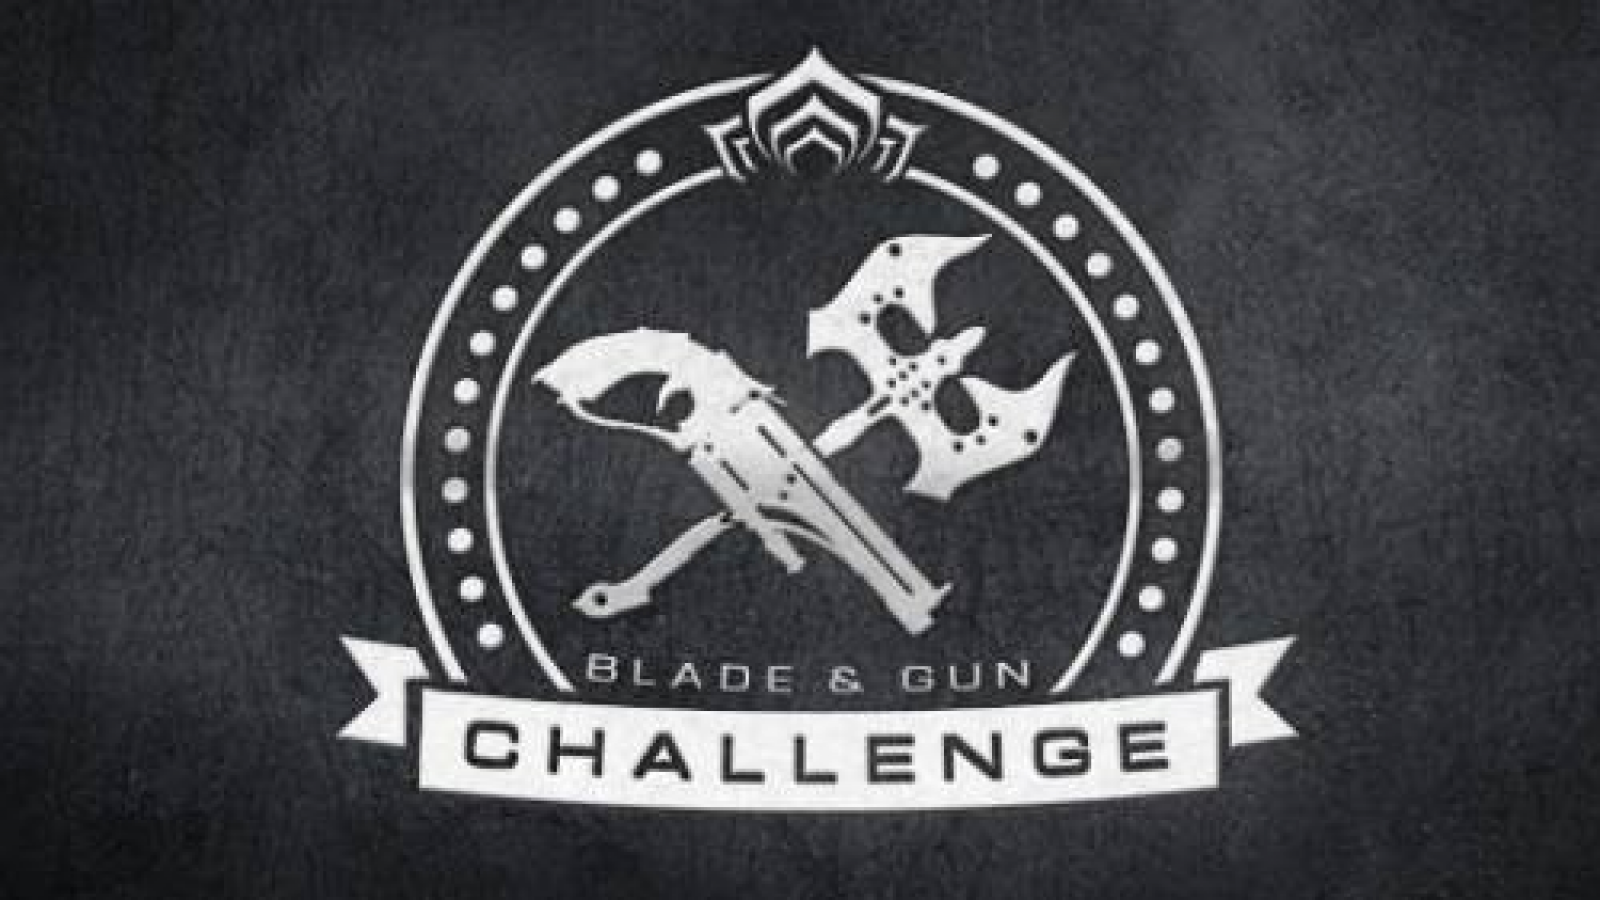 Blade and Gun Champion Challenge